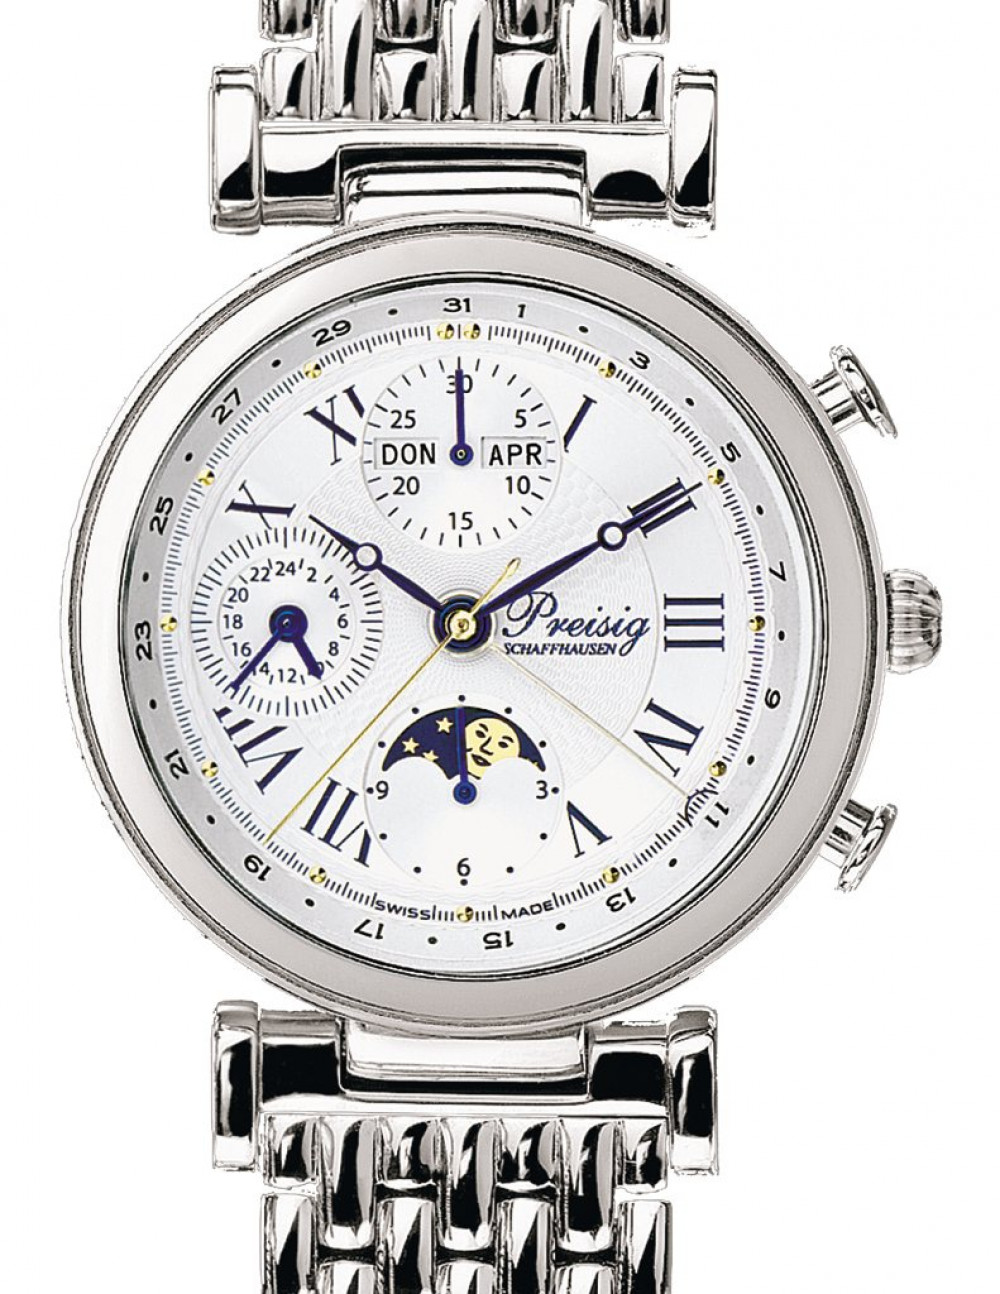 Zegarek firmy Preisig Schaffhausen, model Leader Chronograph